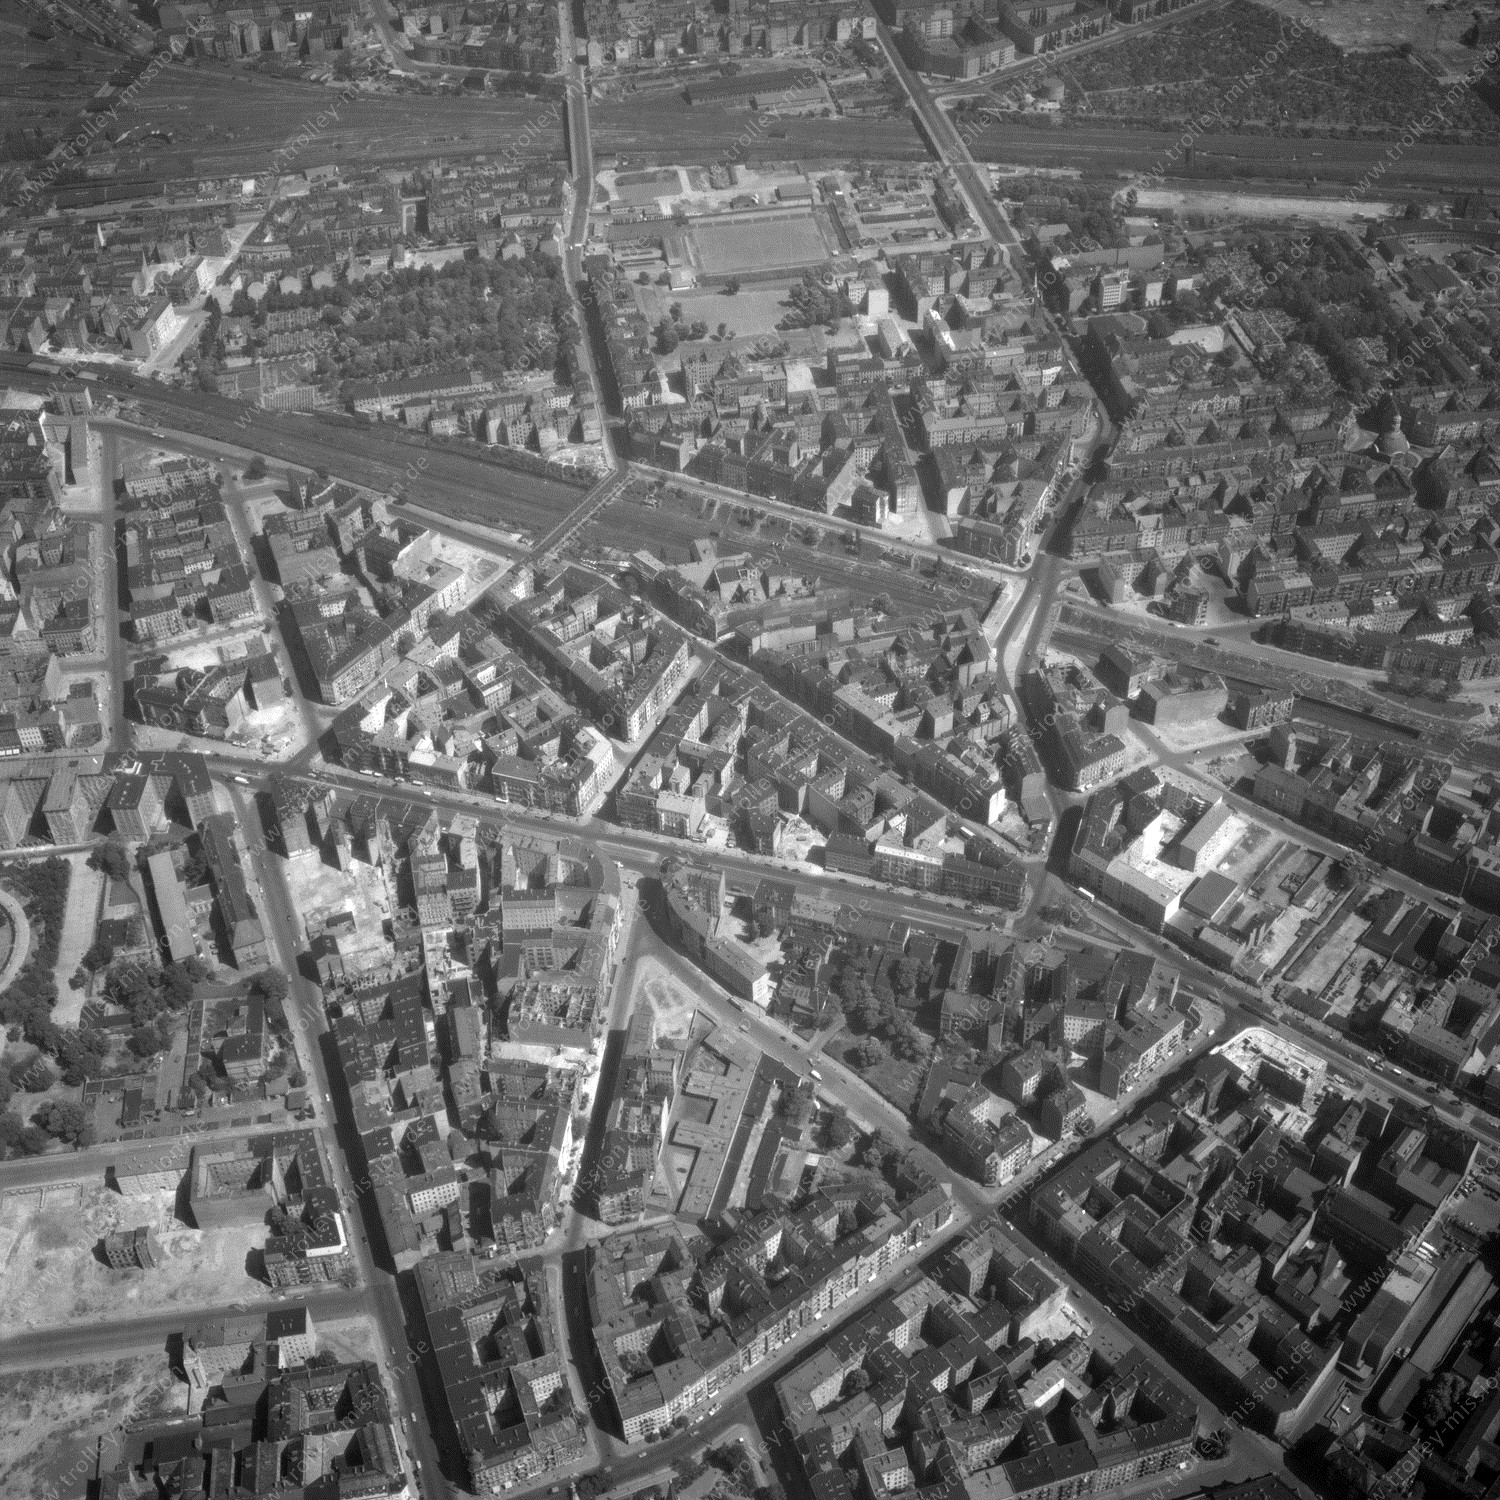 Alte Fotos und Luftbilder von Berlin - Luftbildaufnahme Nr. 02 - Historische Luftaufnahmen von West-Berlin aus dem Jahr 1954 - Flugstrecke Golf